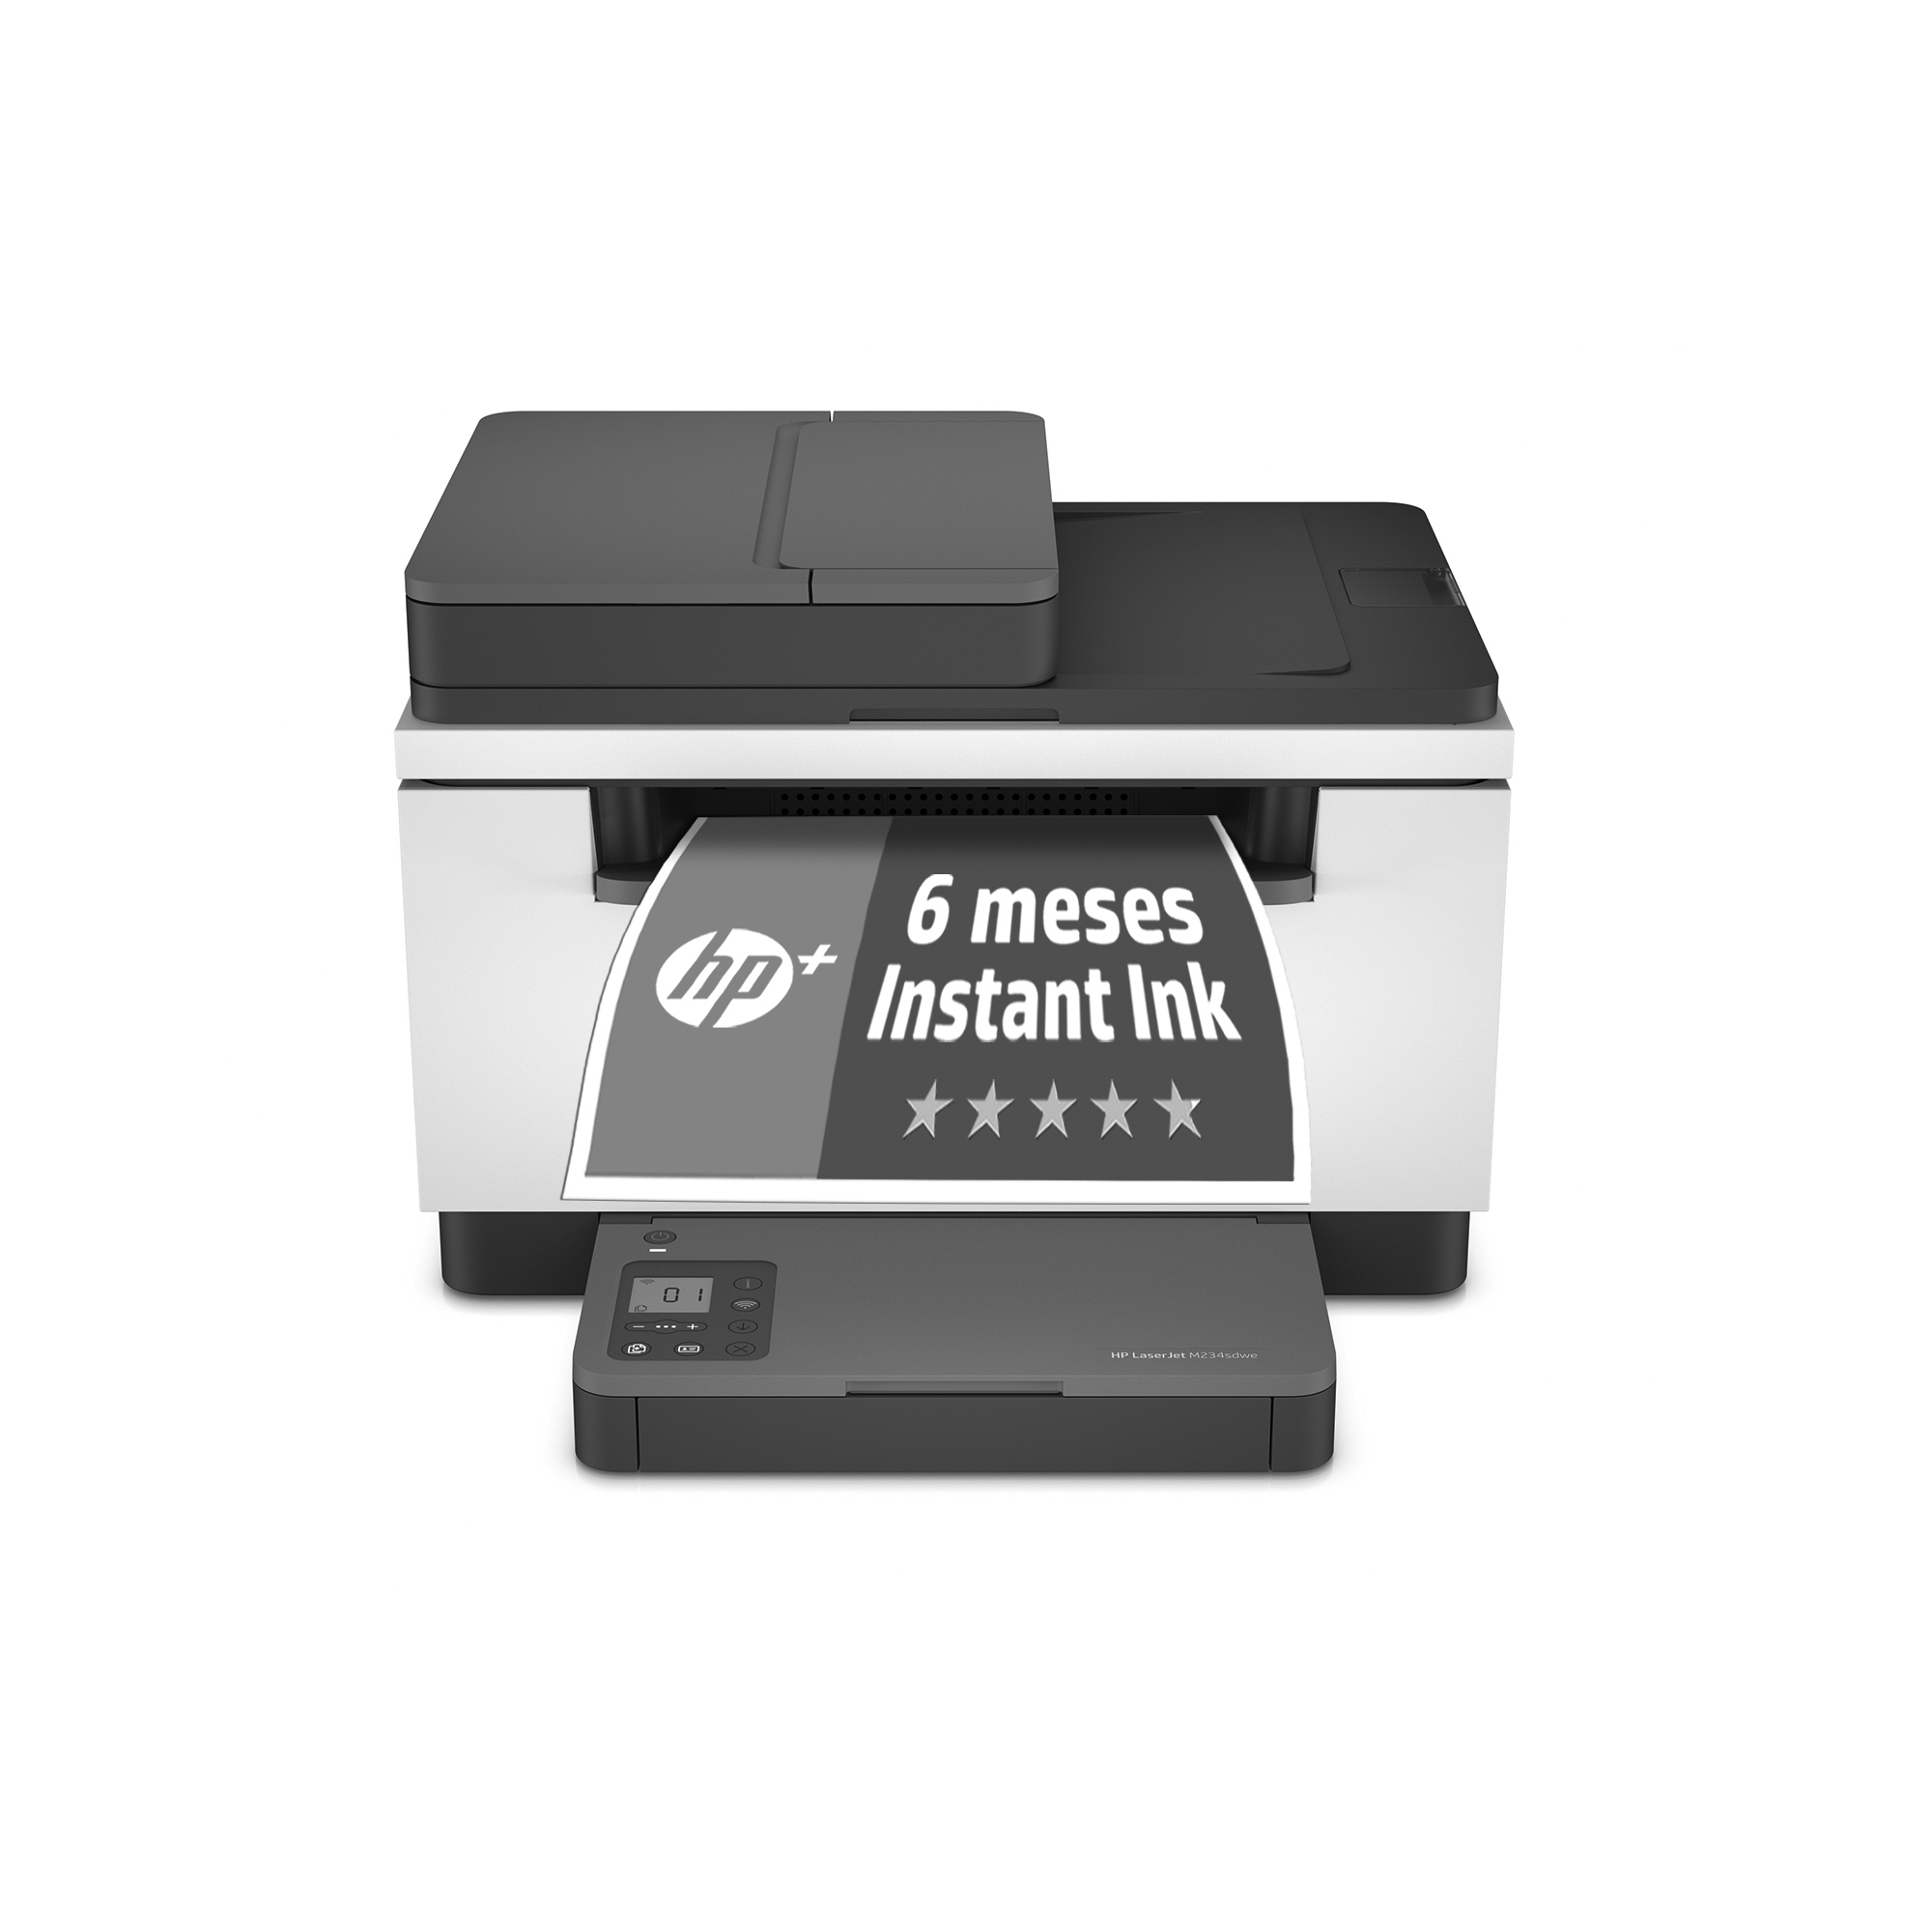 Impresora Multifunción Hp laserjet m234sdwe 6 meses de instant ink con 30 ppm wifi gratis multifuncion laser mfp a4 600 29